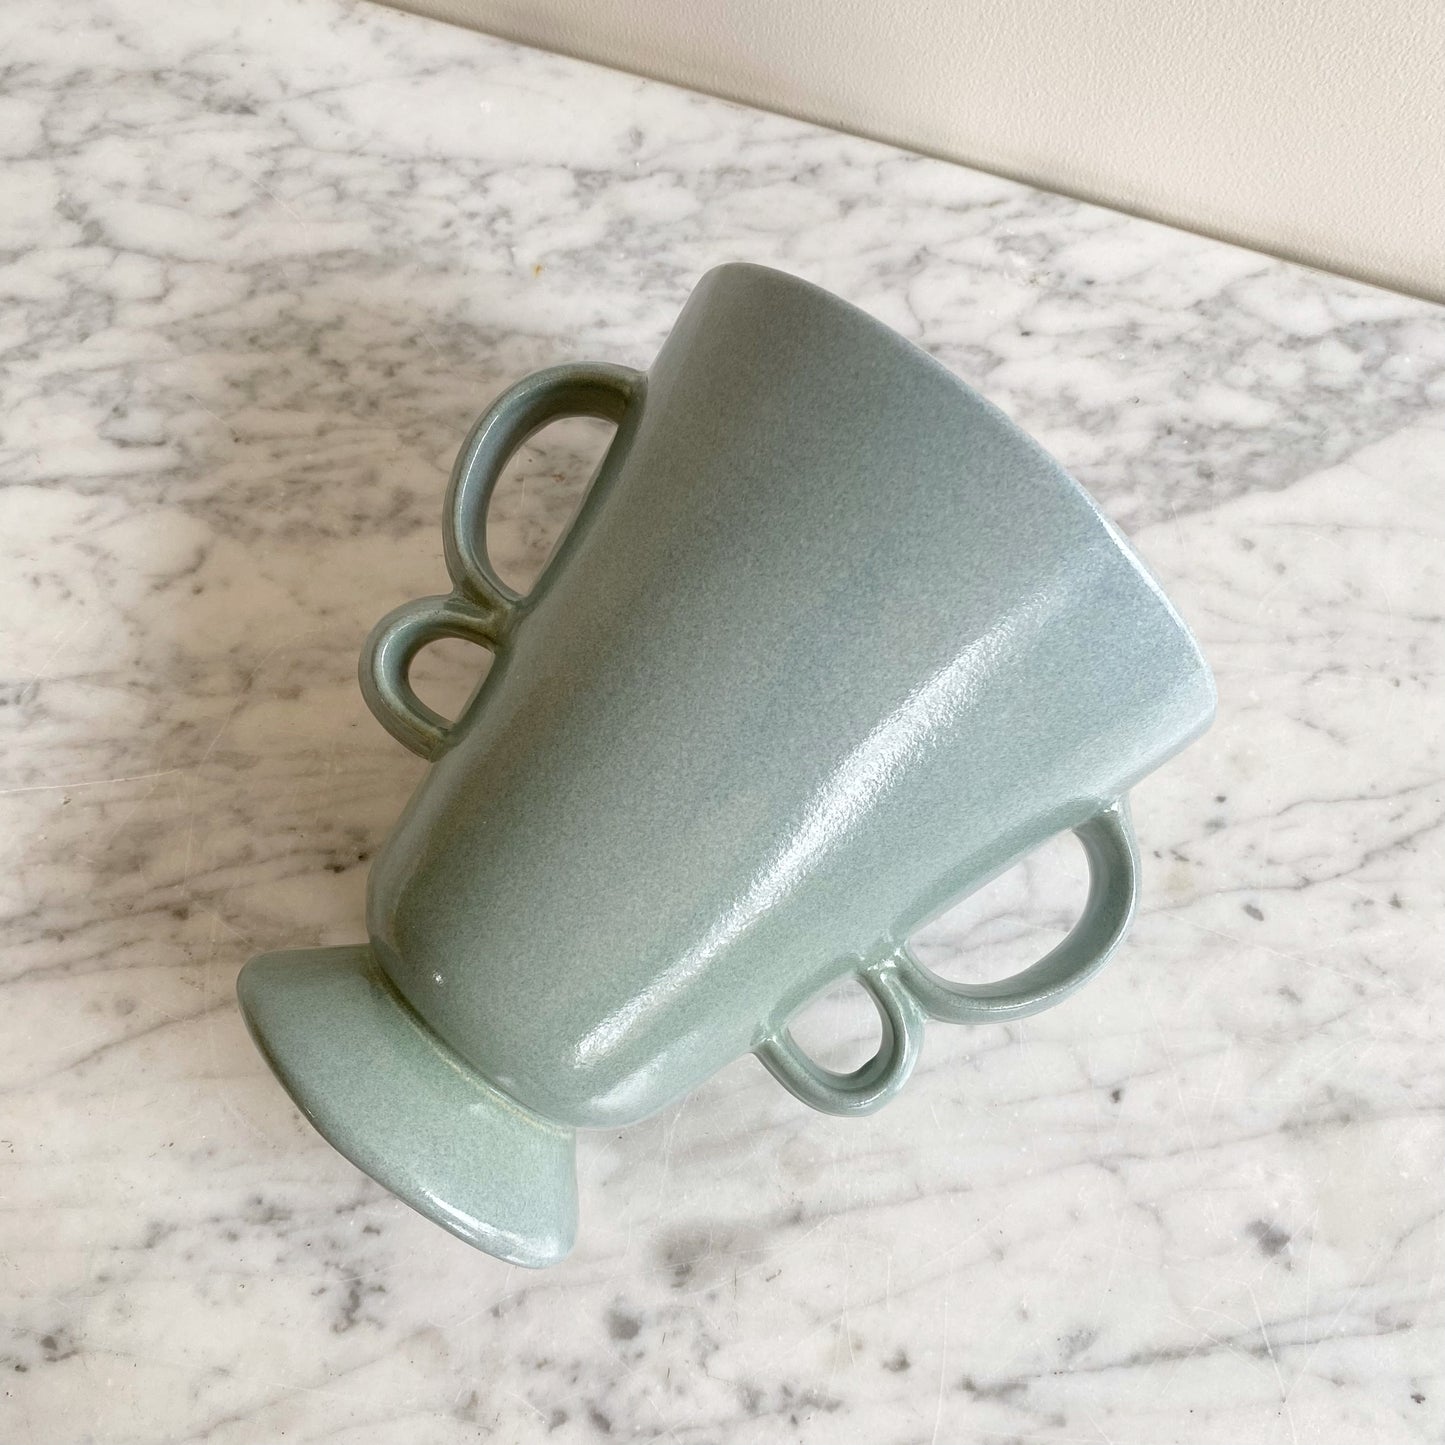 Vintage Ceramic Vase with Double Loop Handles